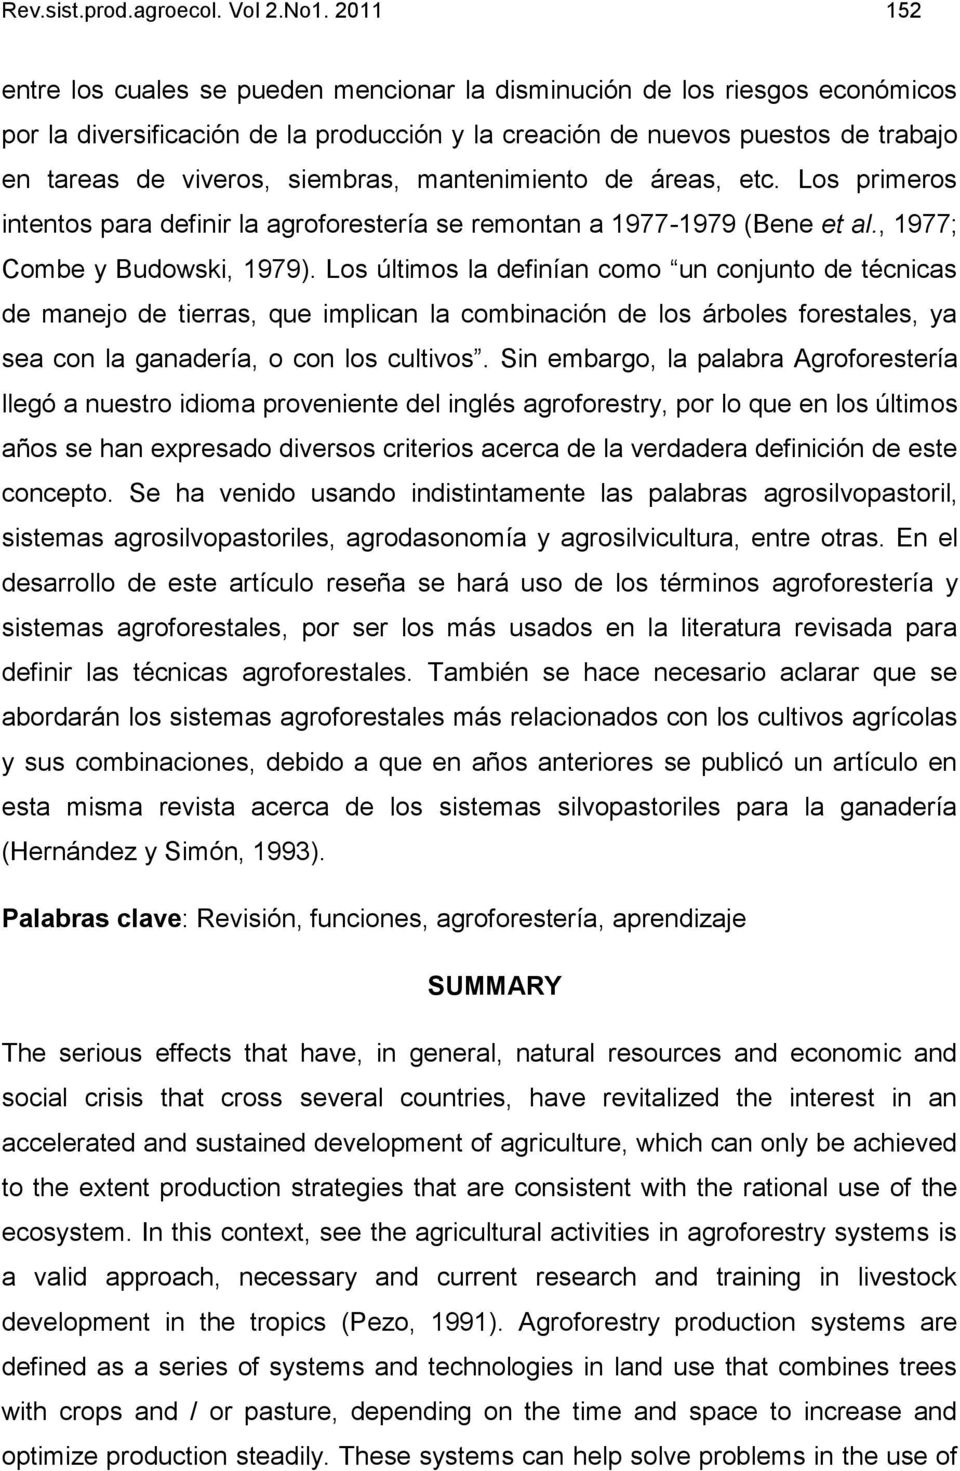 siembras, mantenimiento de áreas, etc. Los primeros intentos para definir la agroforestería se remontan a 1977-1979 (Bene et al., 1977; Combe y Budowski, 1979).